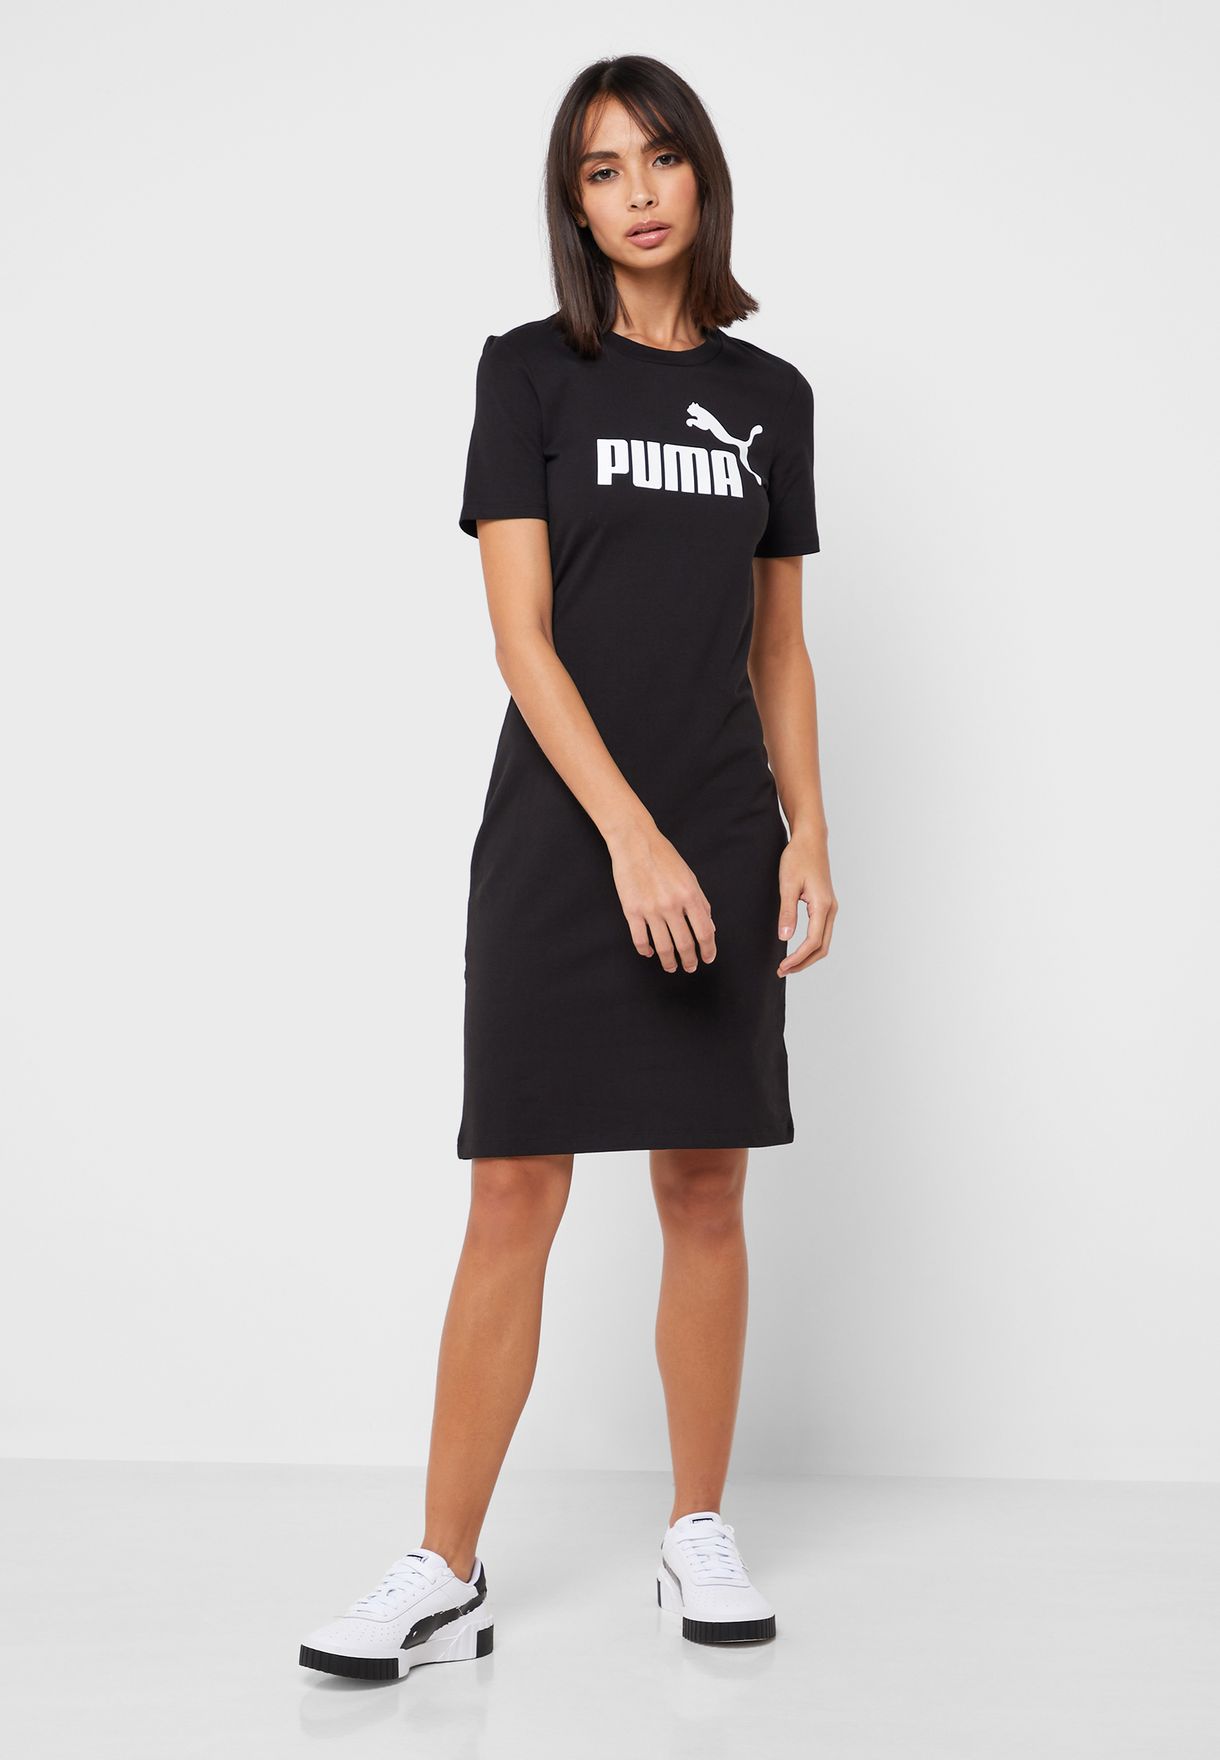 puma logo dress